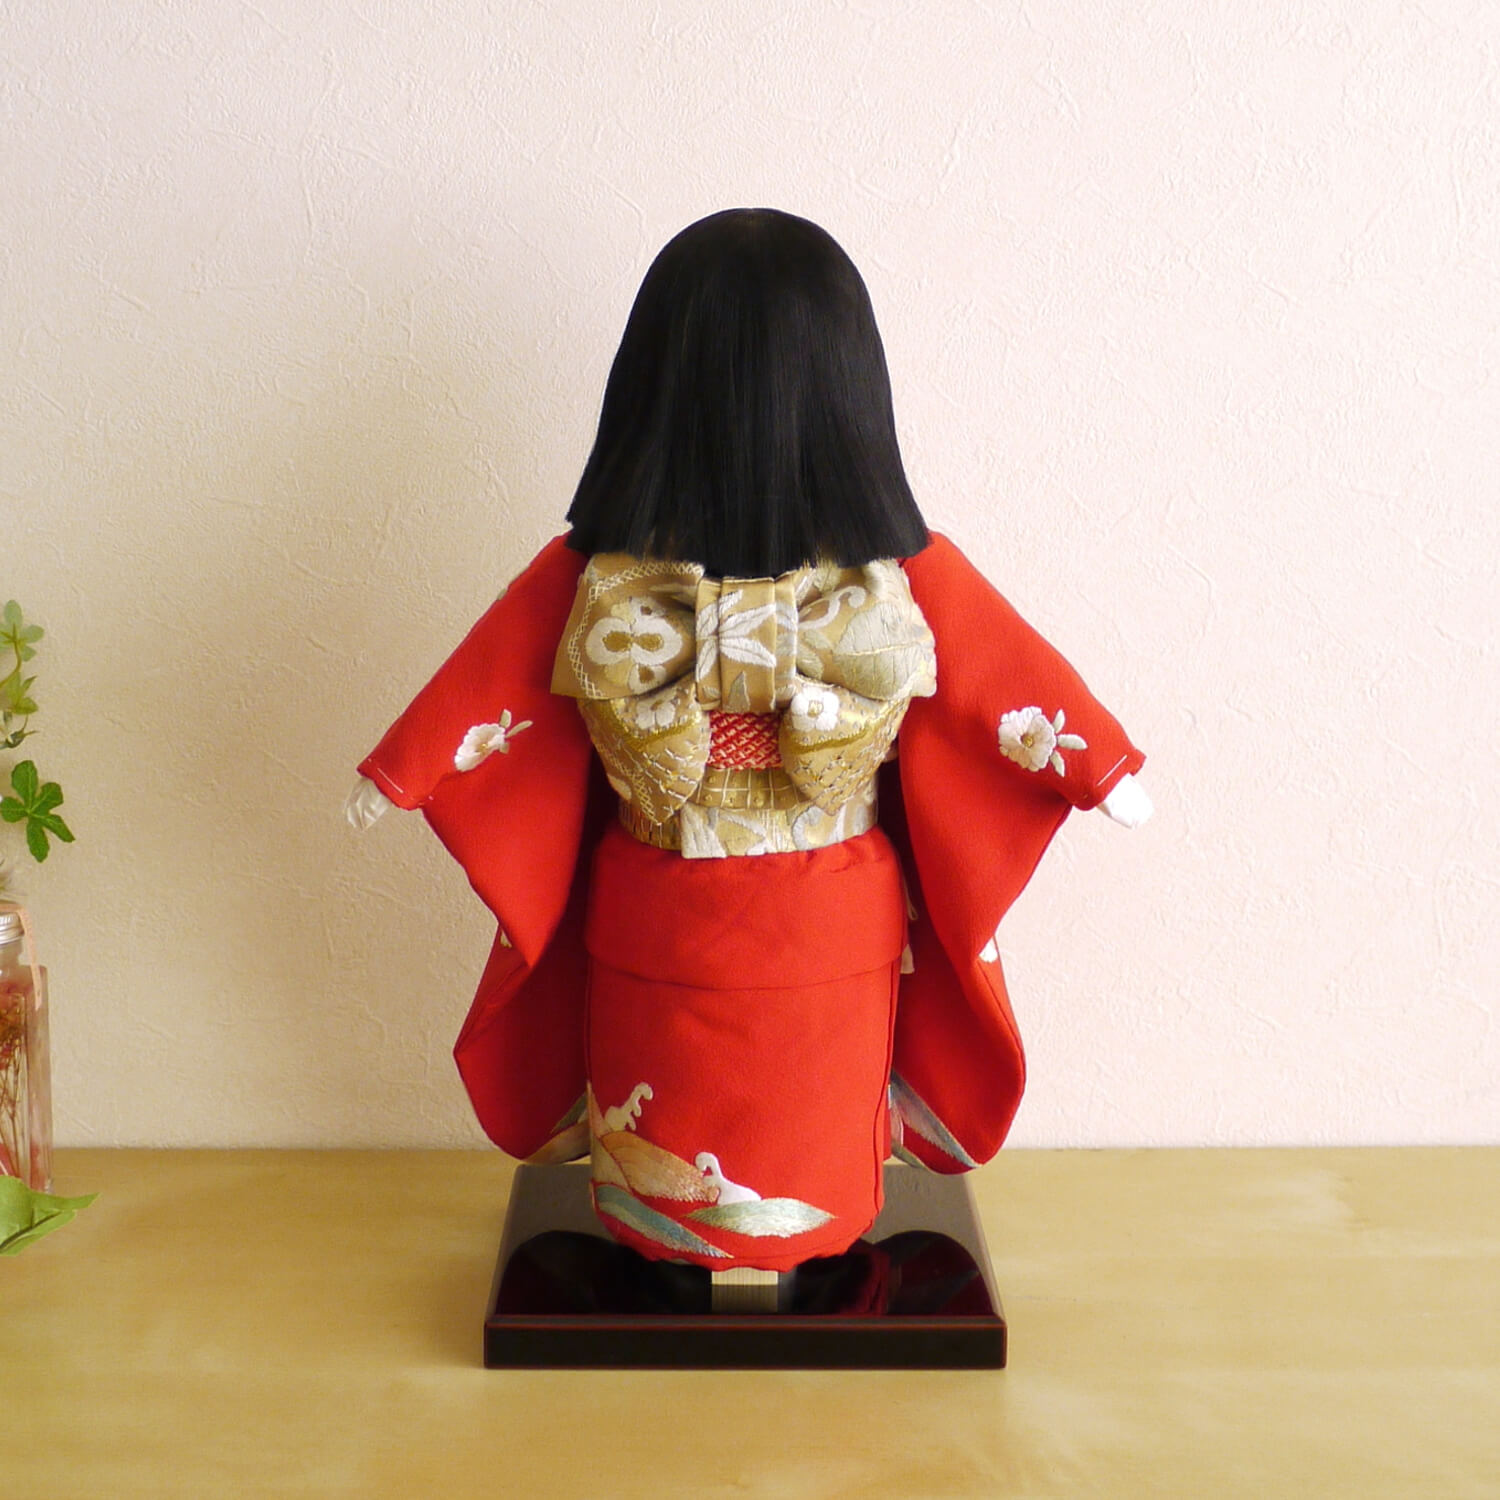 元賀章介作 10号(尺) 正絹手刺繍 おしどり 赤色 手塗本漆台 市松人形 